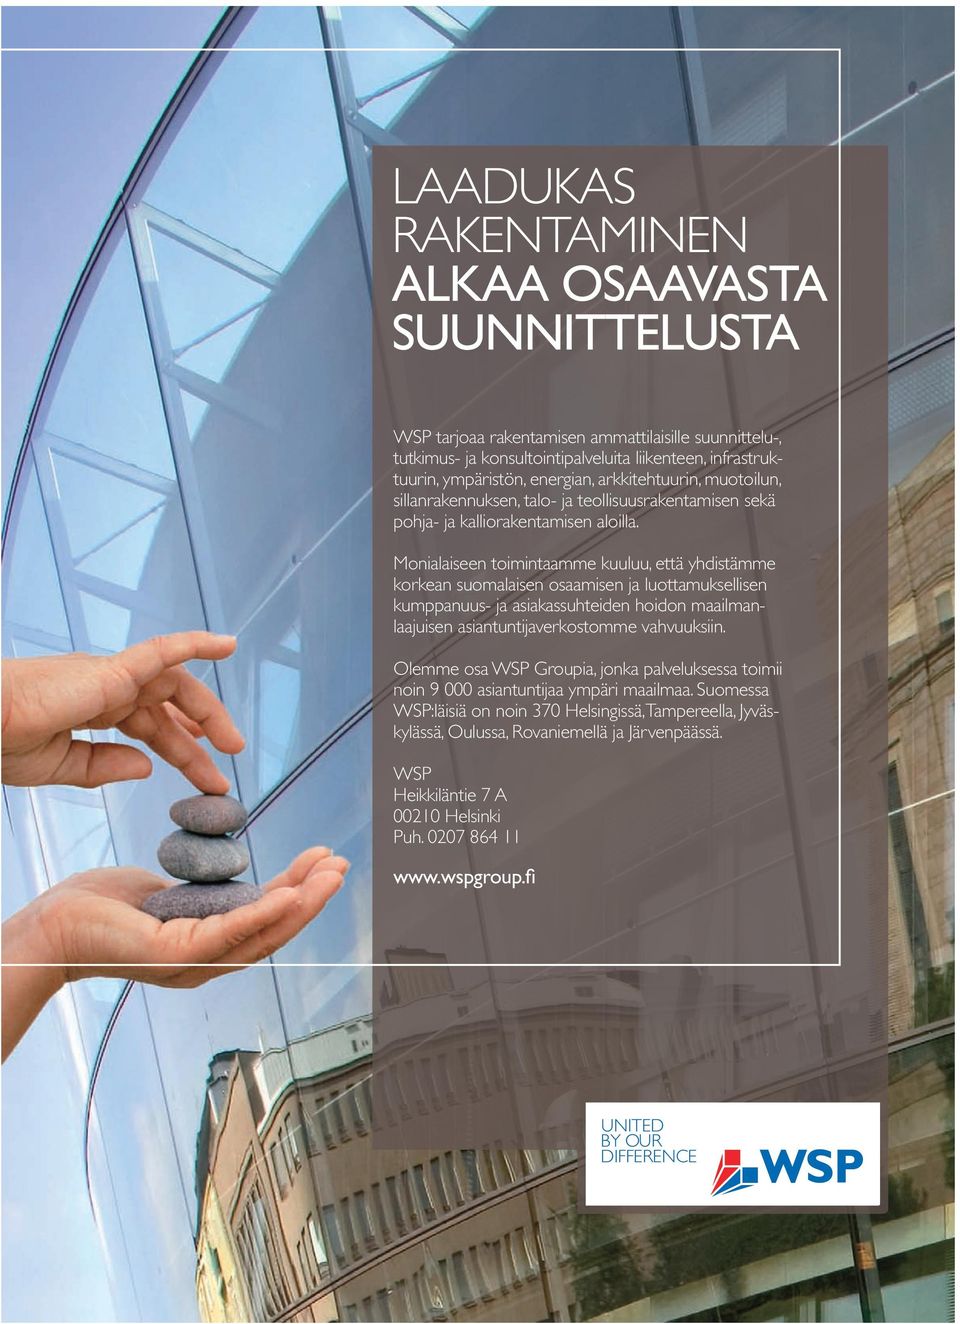 Monialaiseen toimintaamme kuuluu, että yhdistämme korkean suomalaisen osaamisen ja luottamuksellisen kumppanuus- ja asiakassuhteiden hoidon maailmanlaajuisen asiantuntija verkostomme vahvuuksiin.